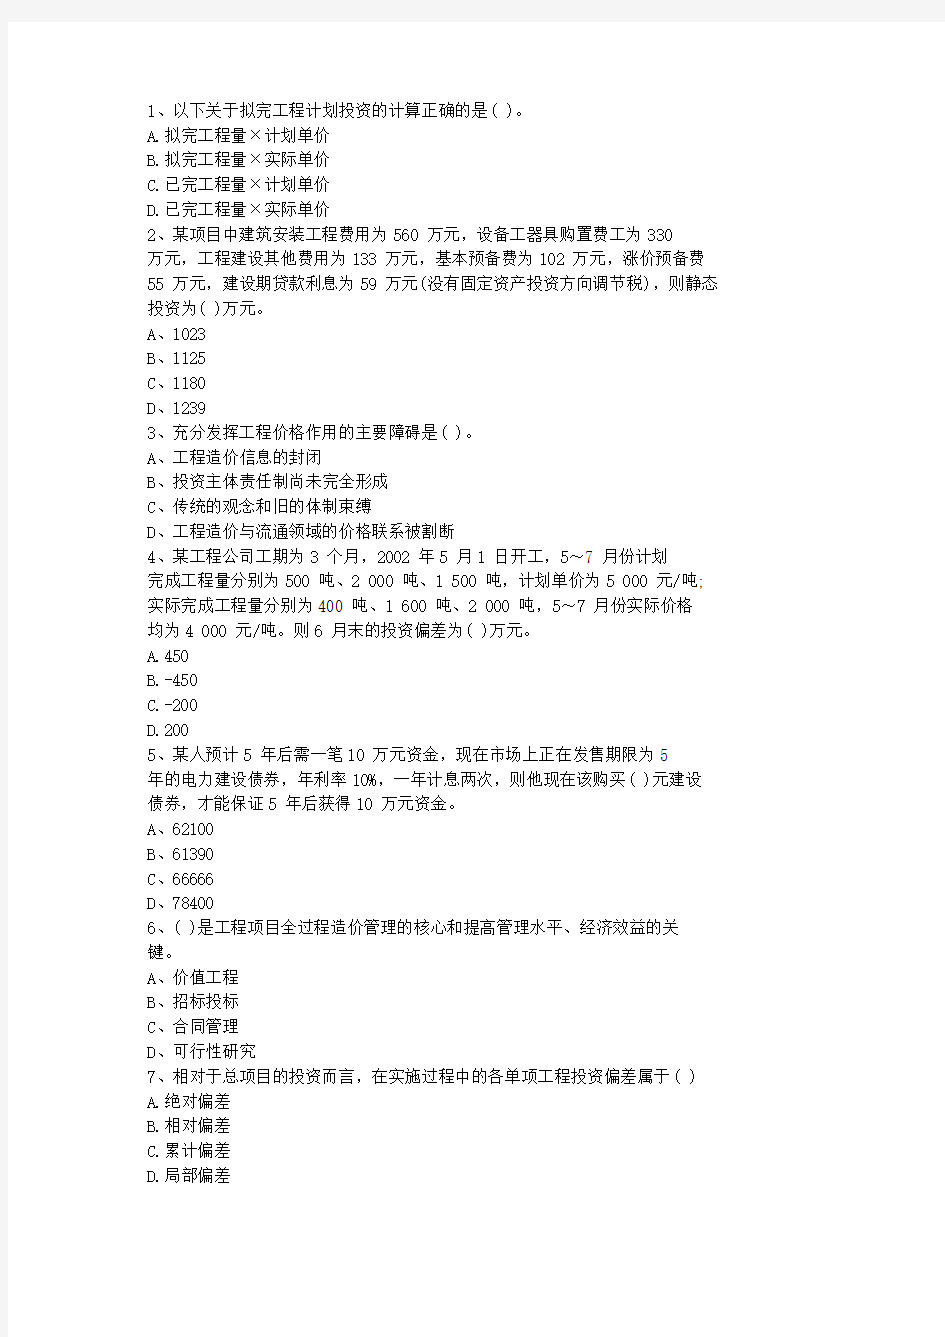 2014河北省造价员考试试题及答案全(打印版)考资料